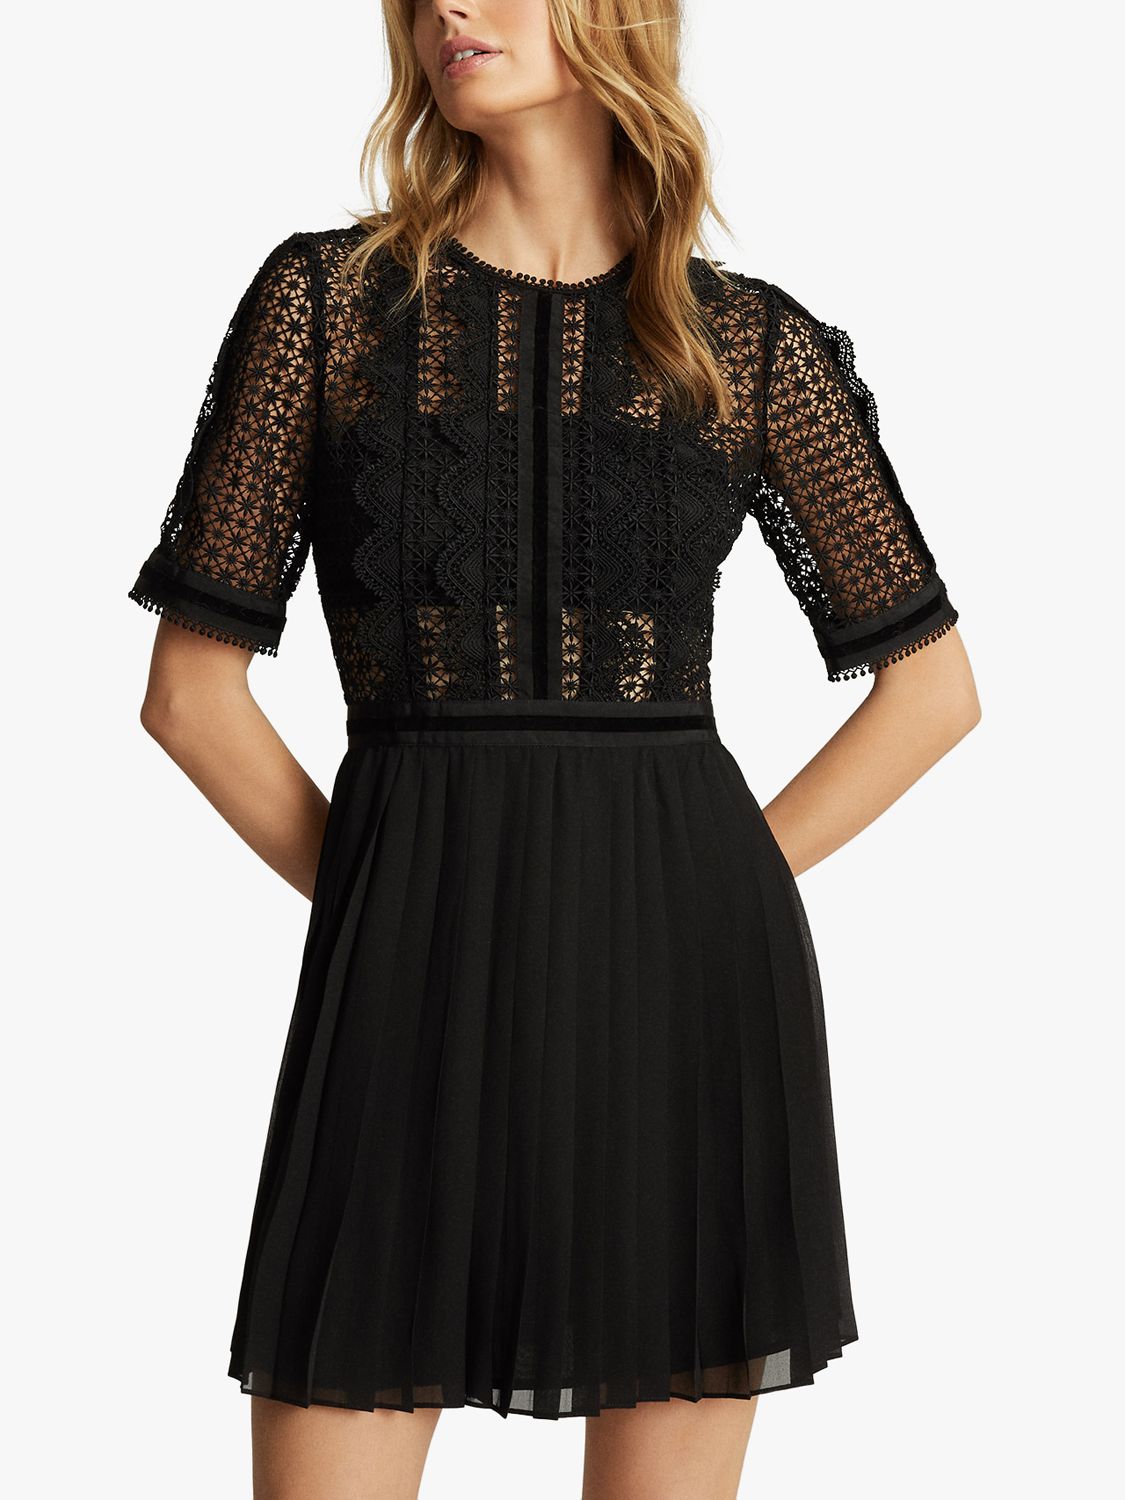 Reiss Athena Textured Dress, Black